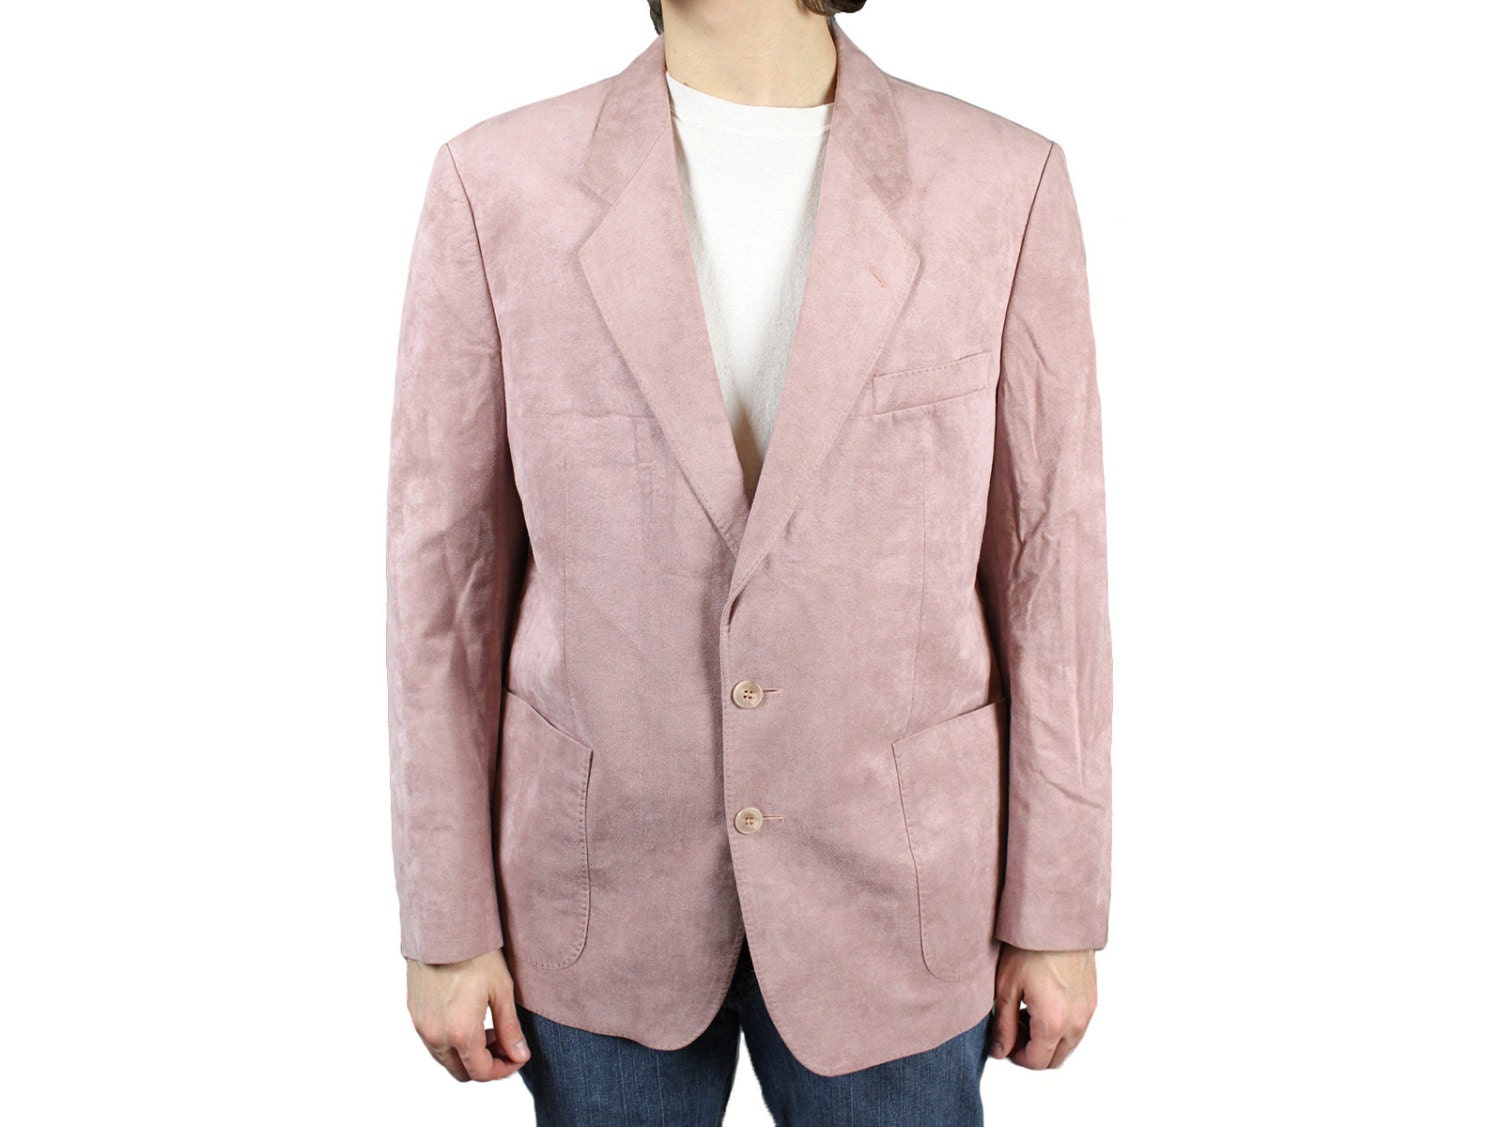 Mens Vintage Blazer Sz 40R Light Mauve Pink Faux by HepCatClothes